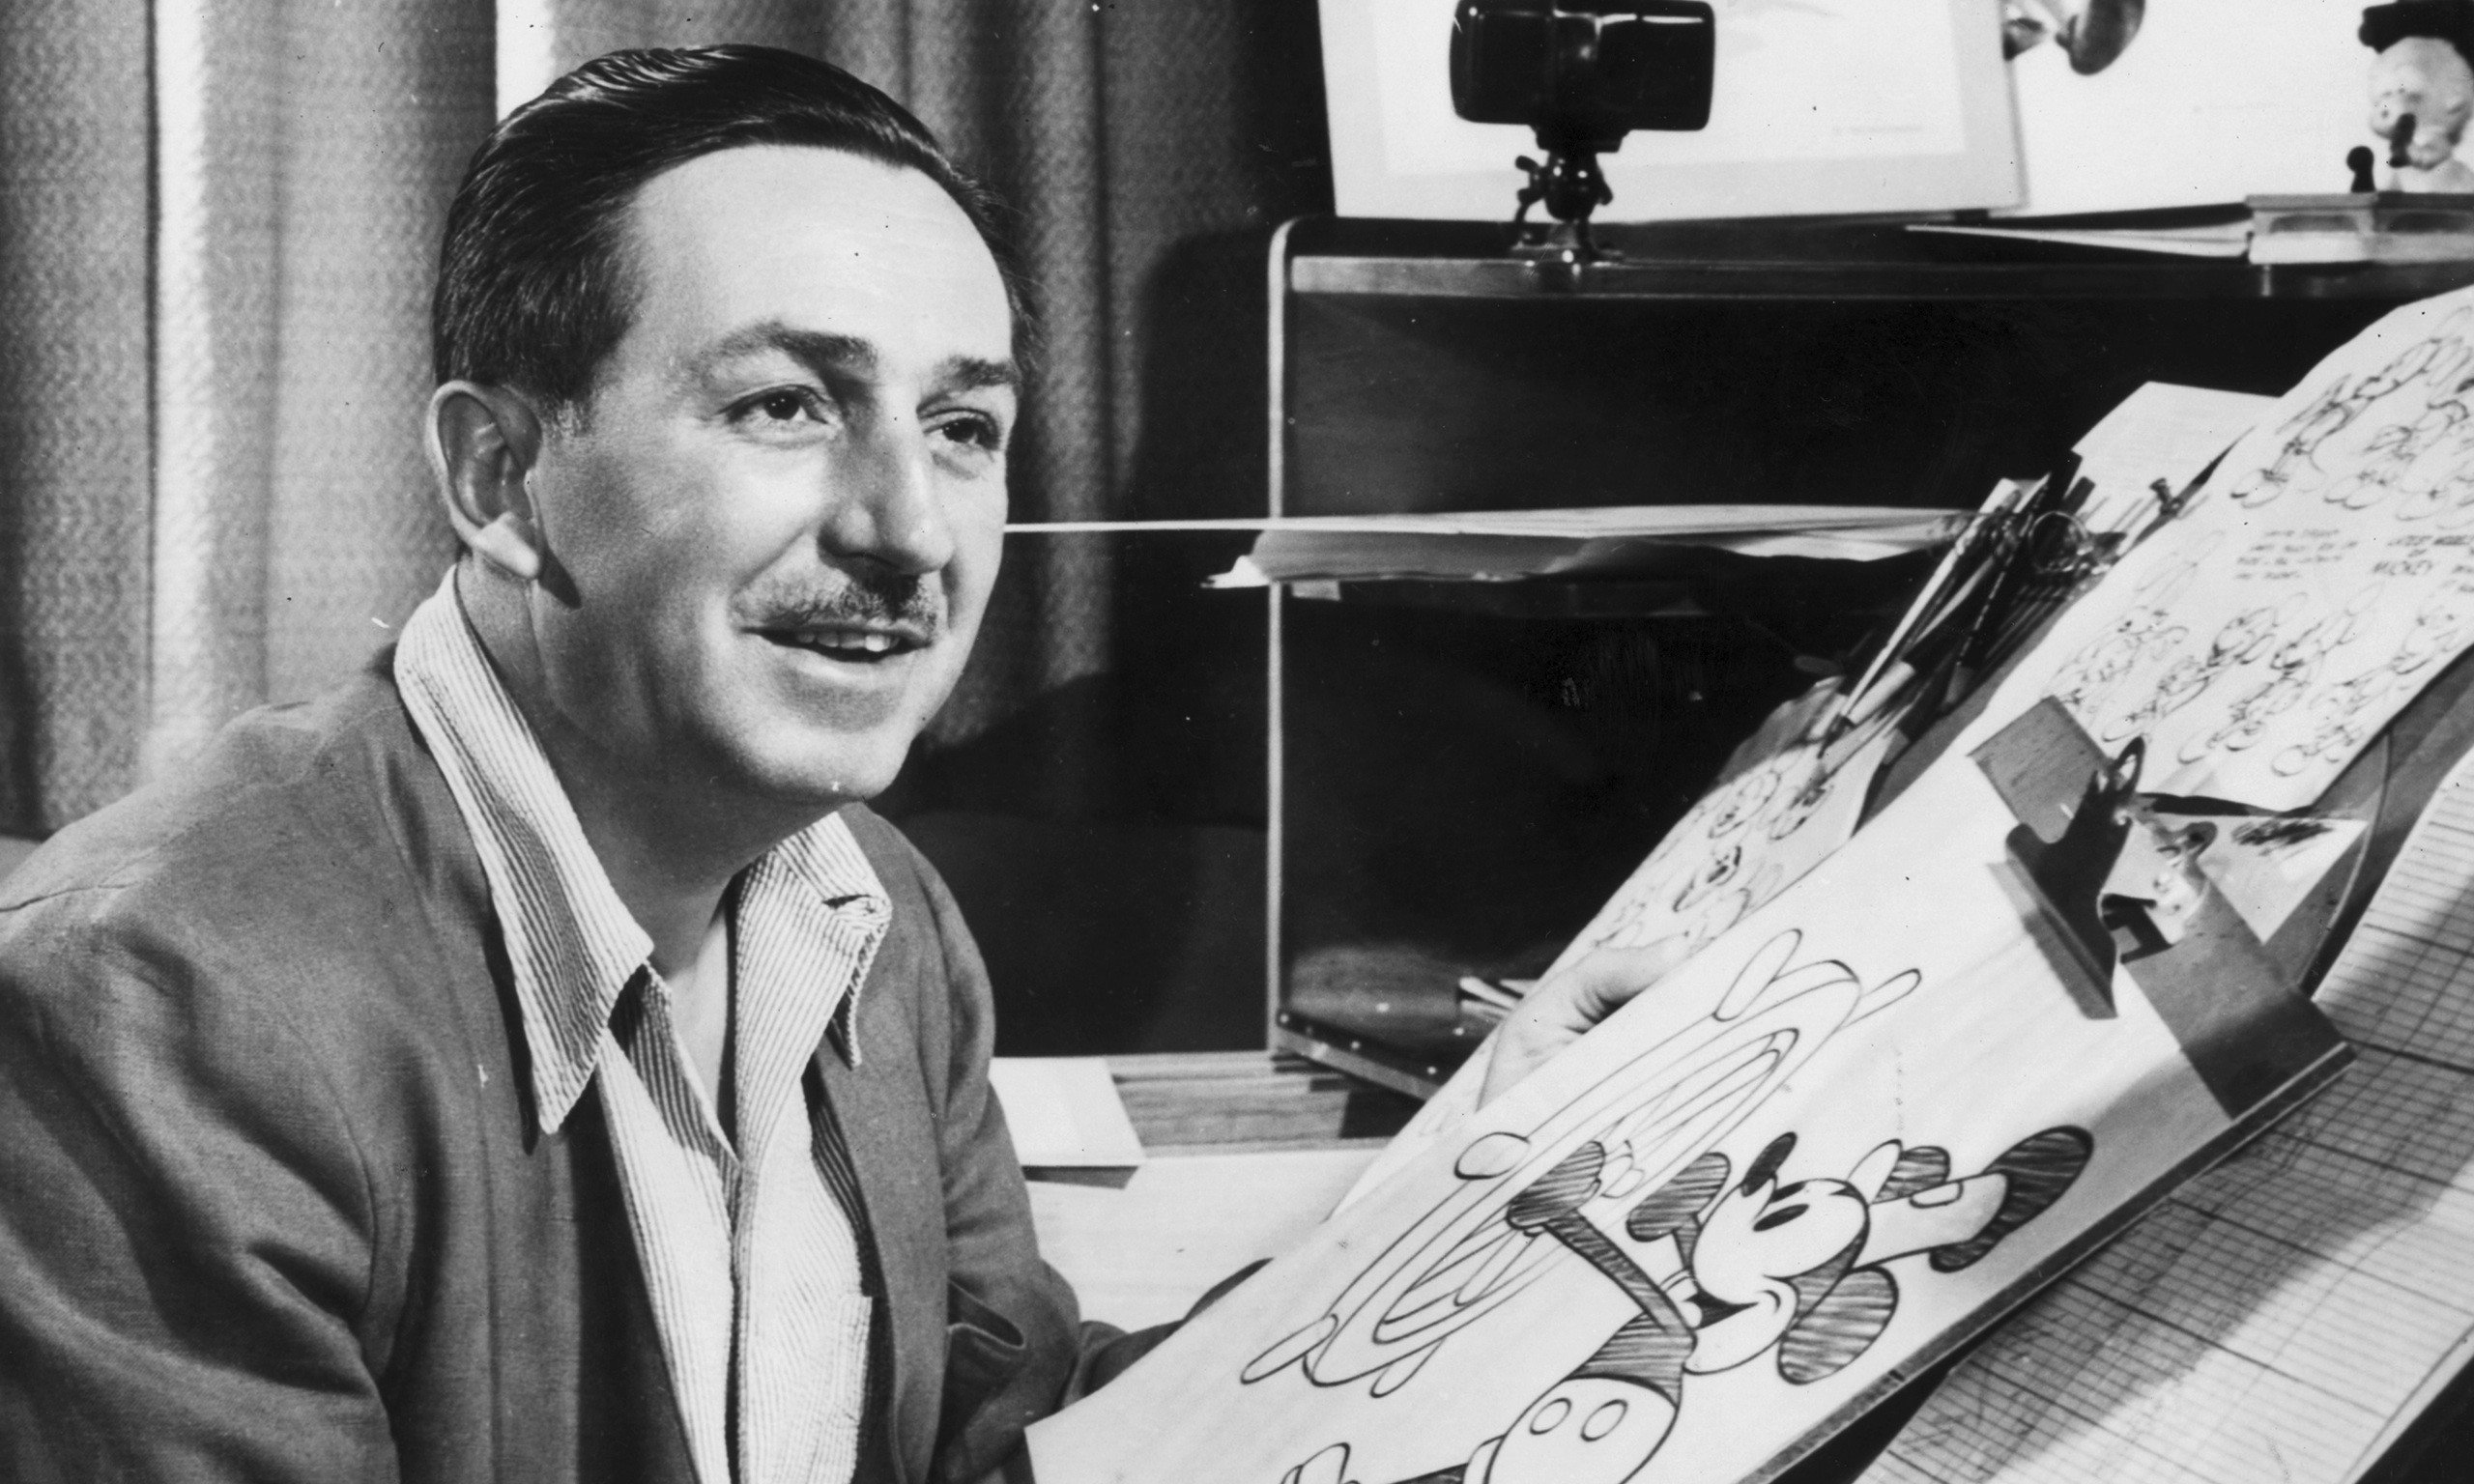 De desempregado a bilionário - a vida de Walt Disney nunca foi fácil